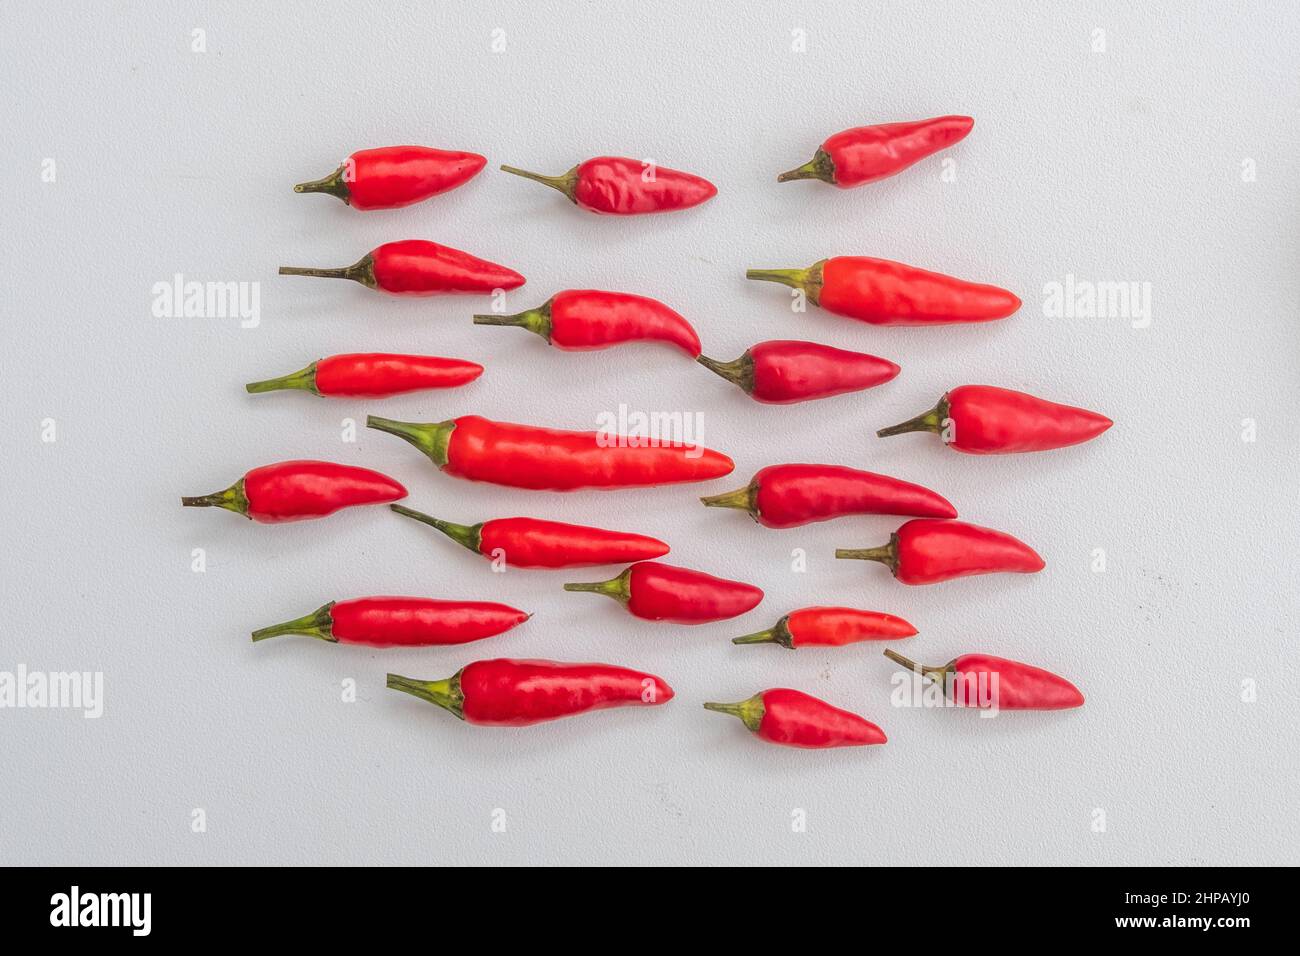 Red Chilis sur fond blanc. Les piments sont également connus sous le nom de chili, piment du chili, piment du Chili ou piment. Le nom botanique est Capsicum. Banque D'Images